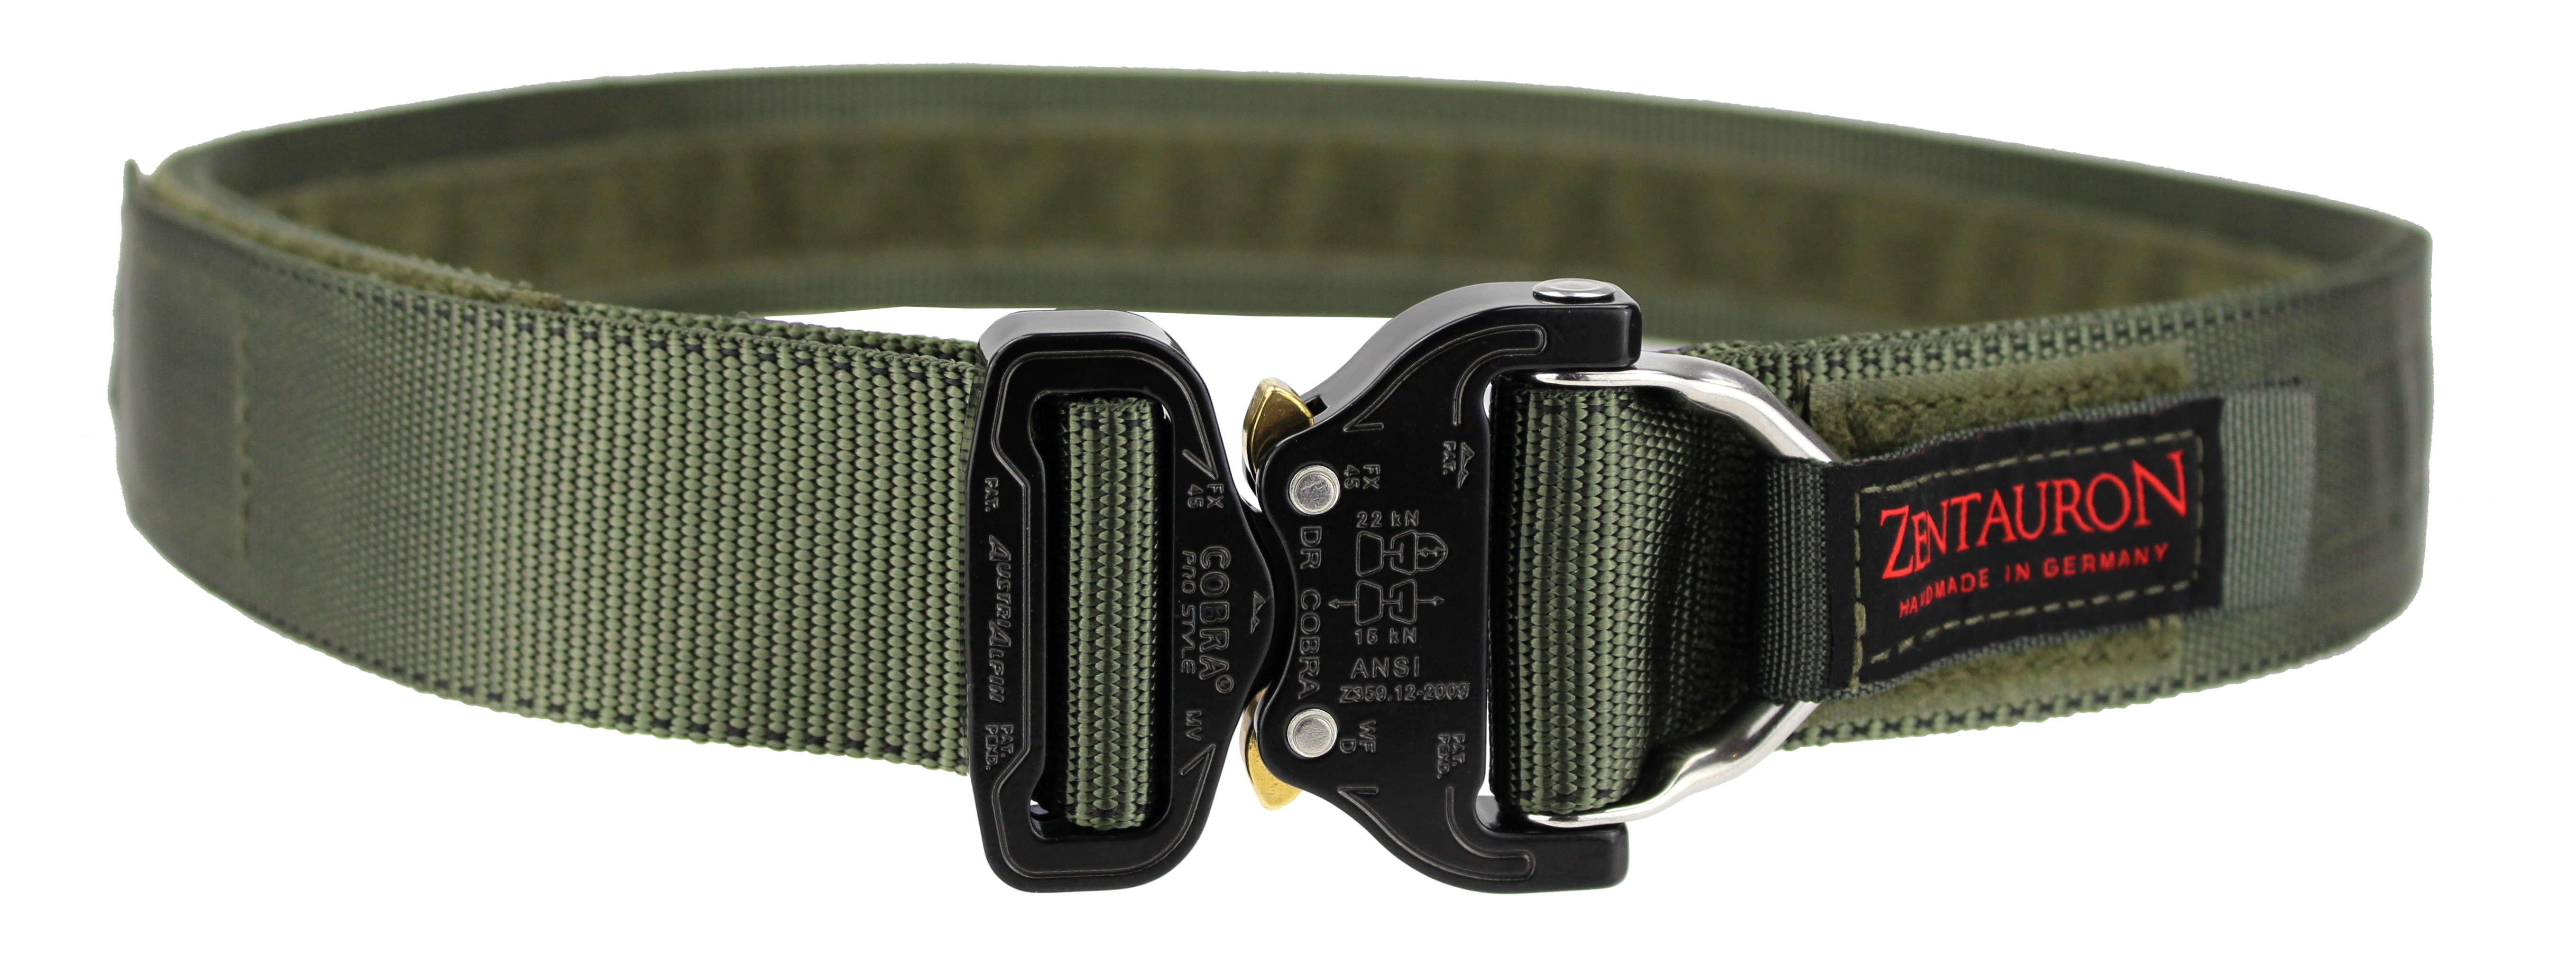 Cobra® Belt mit D-Ring und Nylon-Gurt von ZentauroN